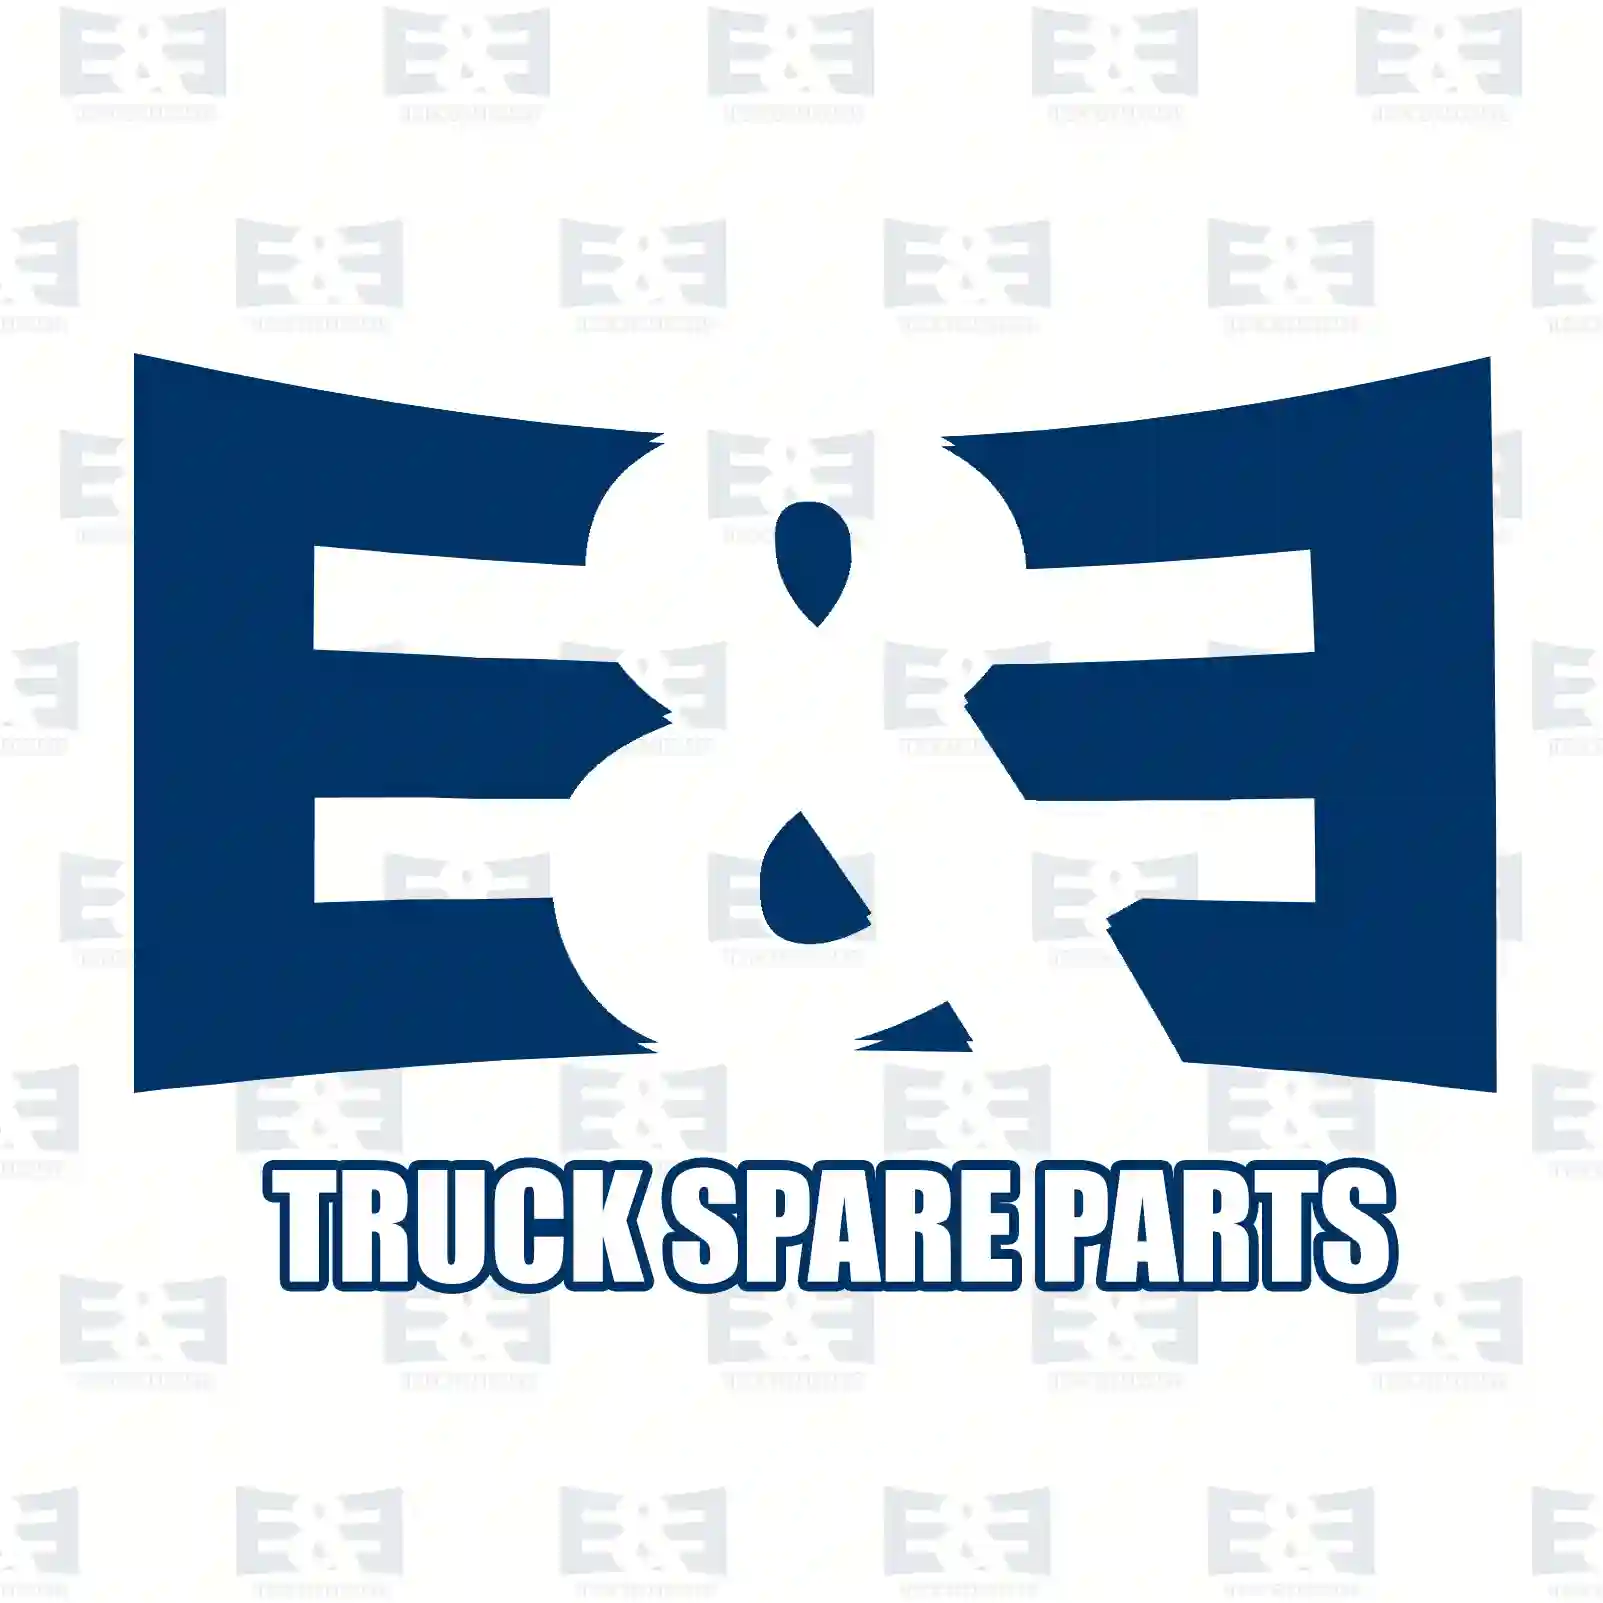 Cabin mounting, 2E2282960, 3878910072, 6208910372, 6208910472, , ||  2E2282960 E&E Truck Spare Parts | Truck Spare Parts, Auotomotive Spare Parts Cabin mounting, 2E2282960, 3878910072, 6208910372, 6208910472, , ||  2E2282960 E&E Truck Spare Parts | Truck Spare Parts, Auotomotive Spare Parts